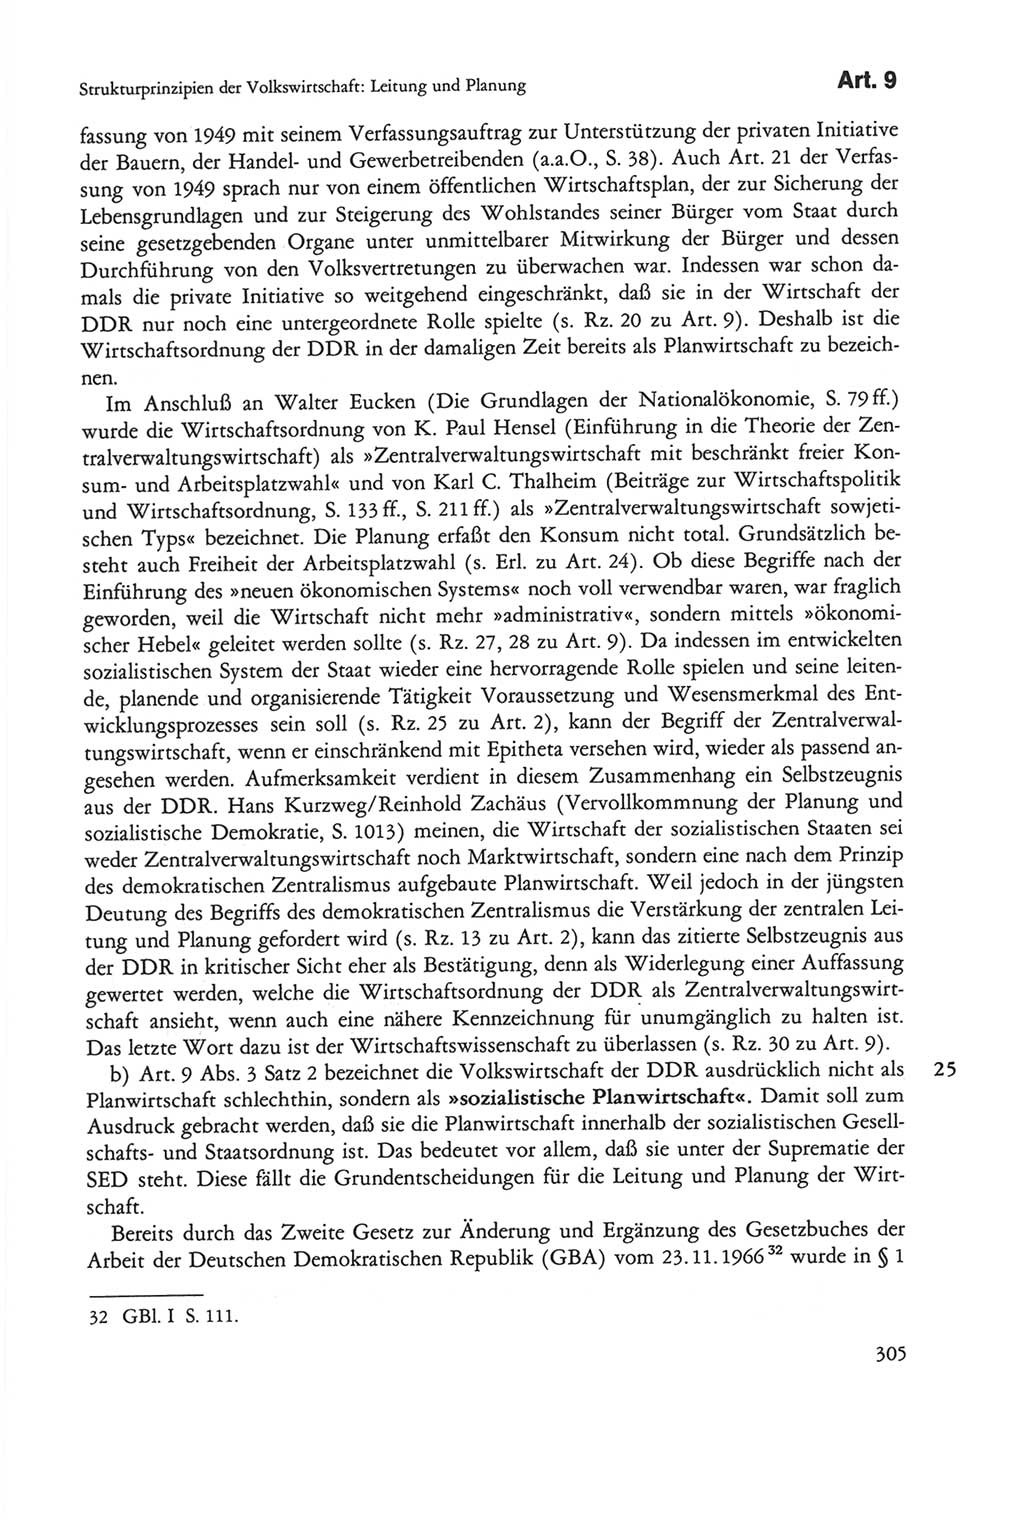 Die sozialistische Verfassung der Deutschen Demokratischen Republik (DDR), Kommentar mit einem Nachtrag 1997, Seite 305 (Soz. Verf. DDR Komm. Nachtr. 1997, S. 305)